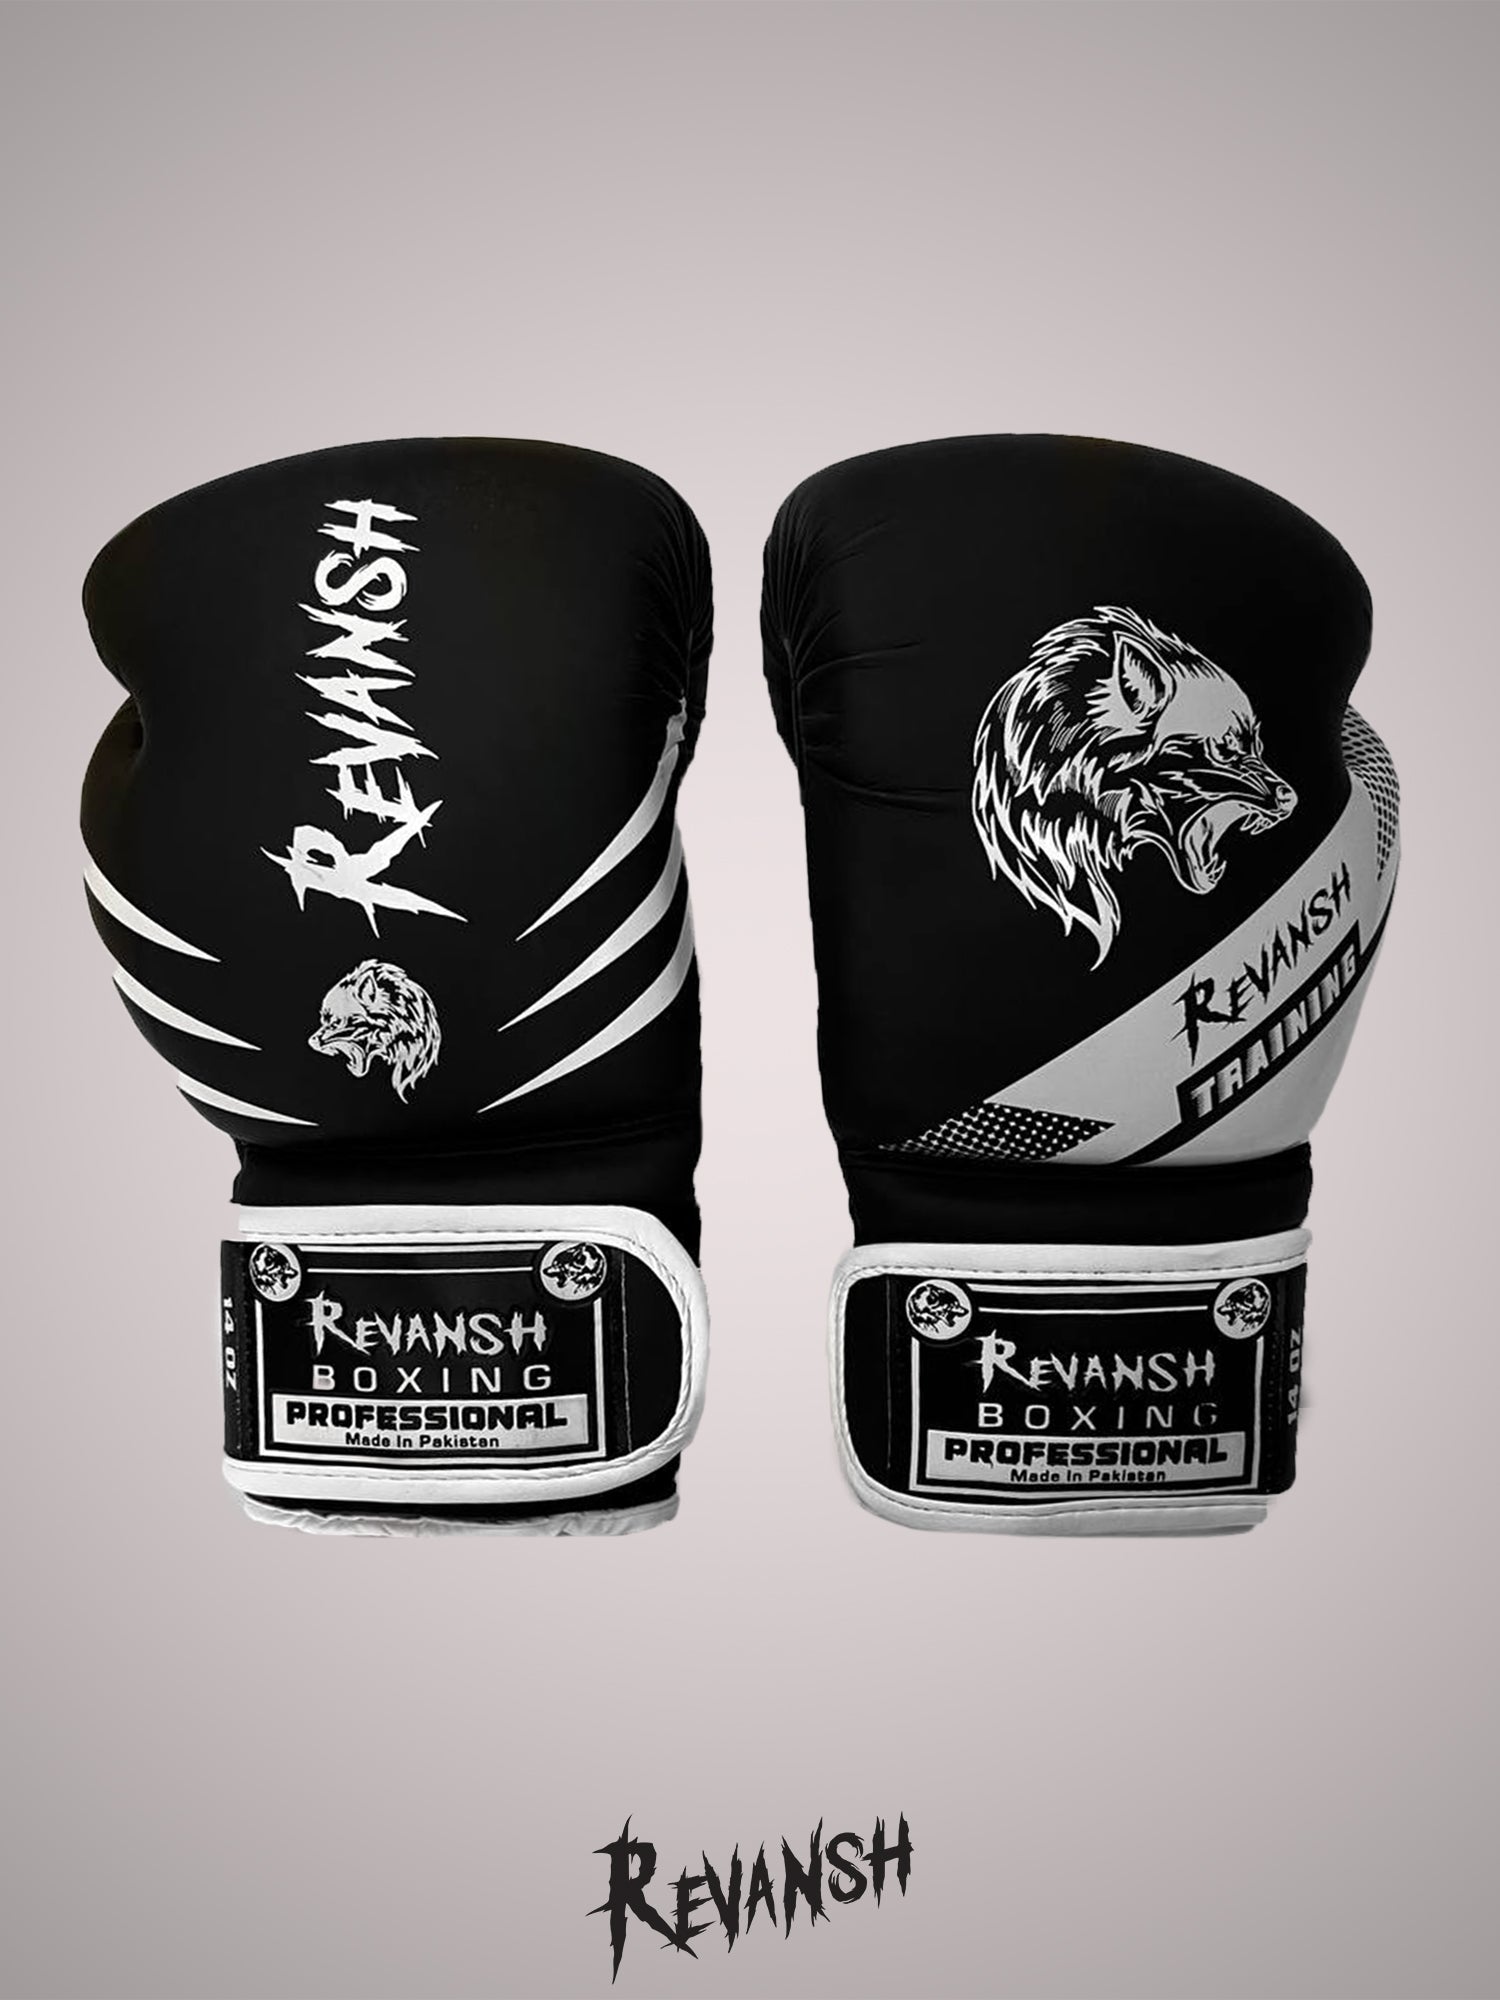 Boxing gloves REVANSH NEO, black and white